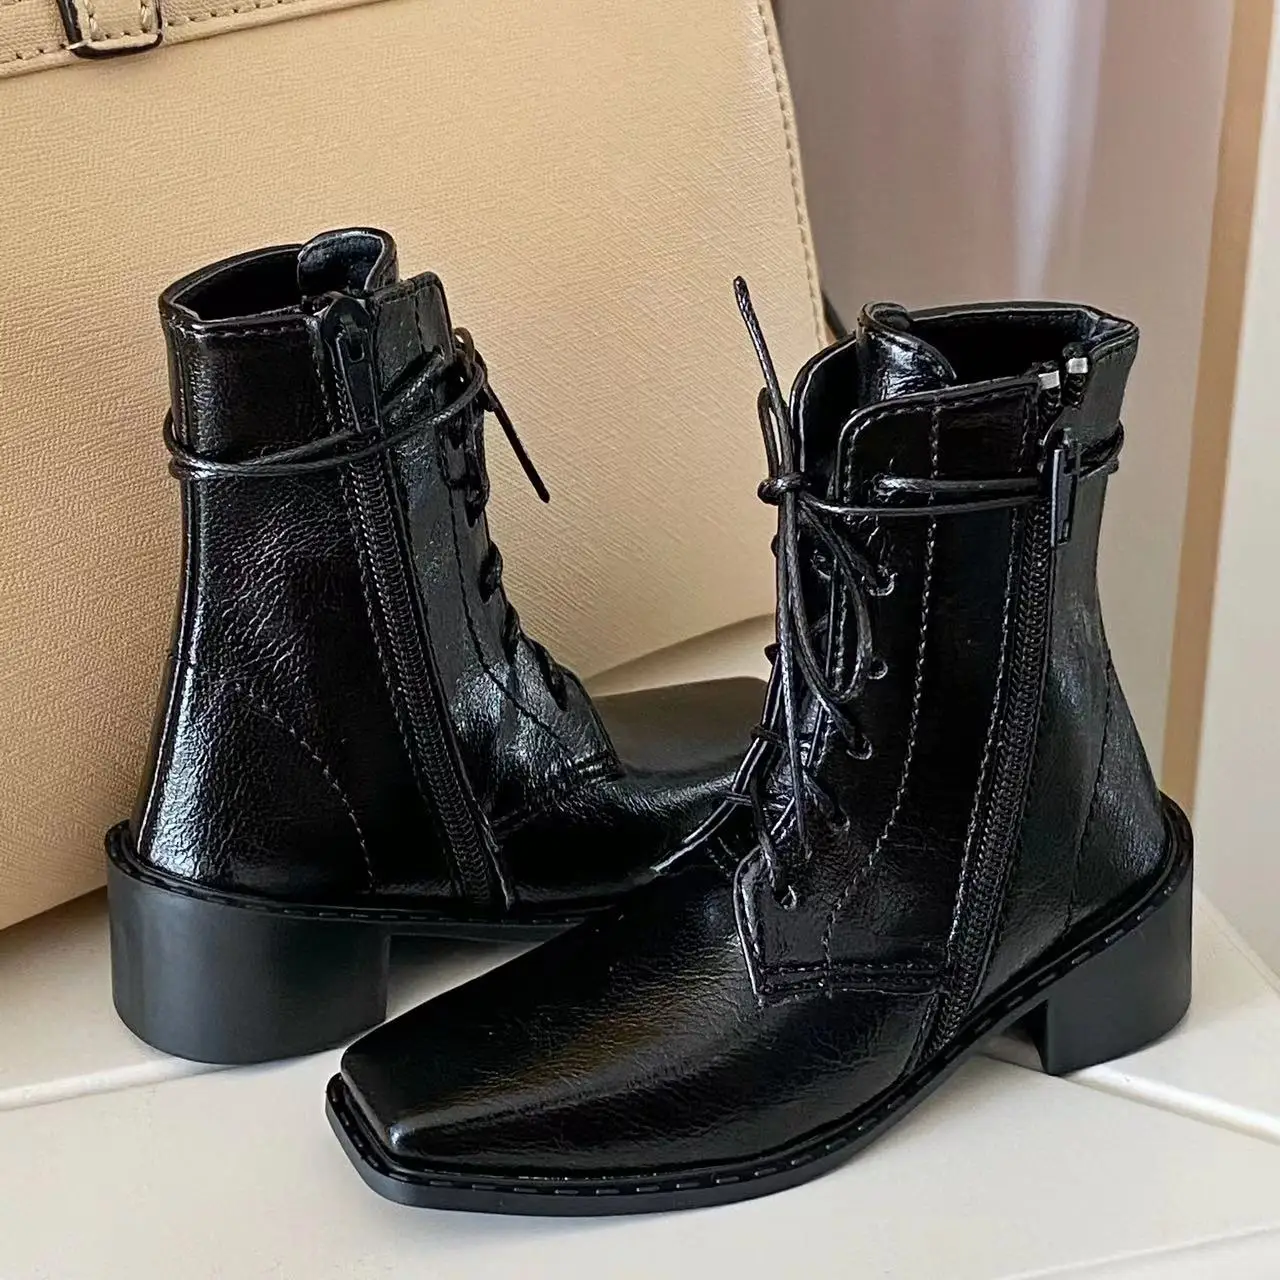 BJD bebek ayakkabıları için uygundur 1/3 Amca SSDF moda topuk kare çizmeler klasik kısa kollu kırmızımsı kahverengi siyah erkekler